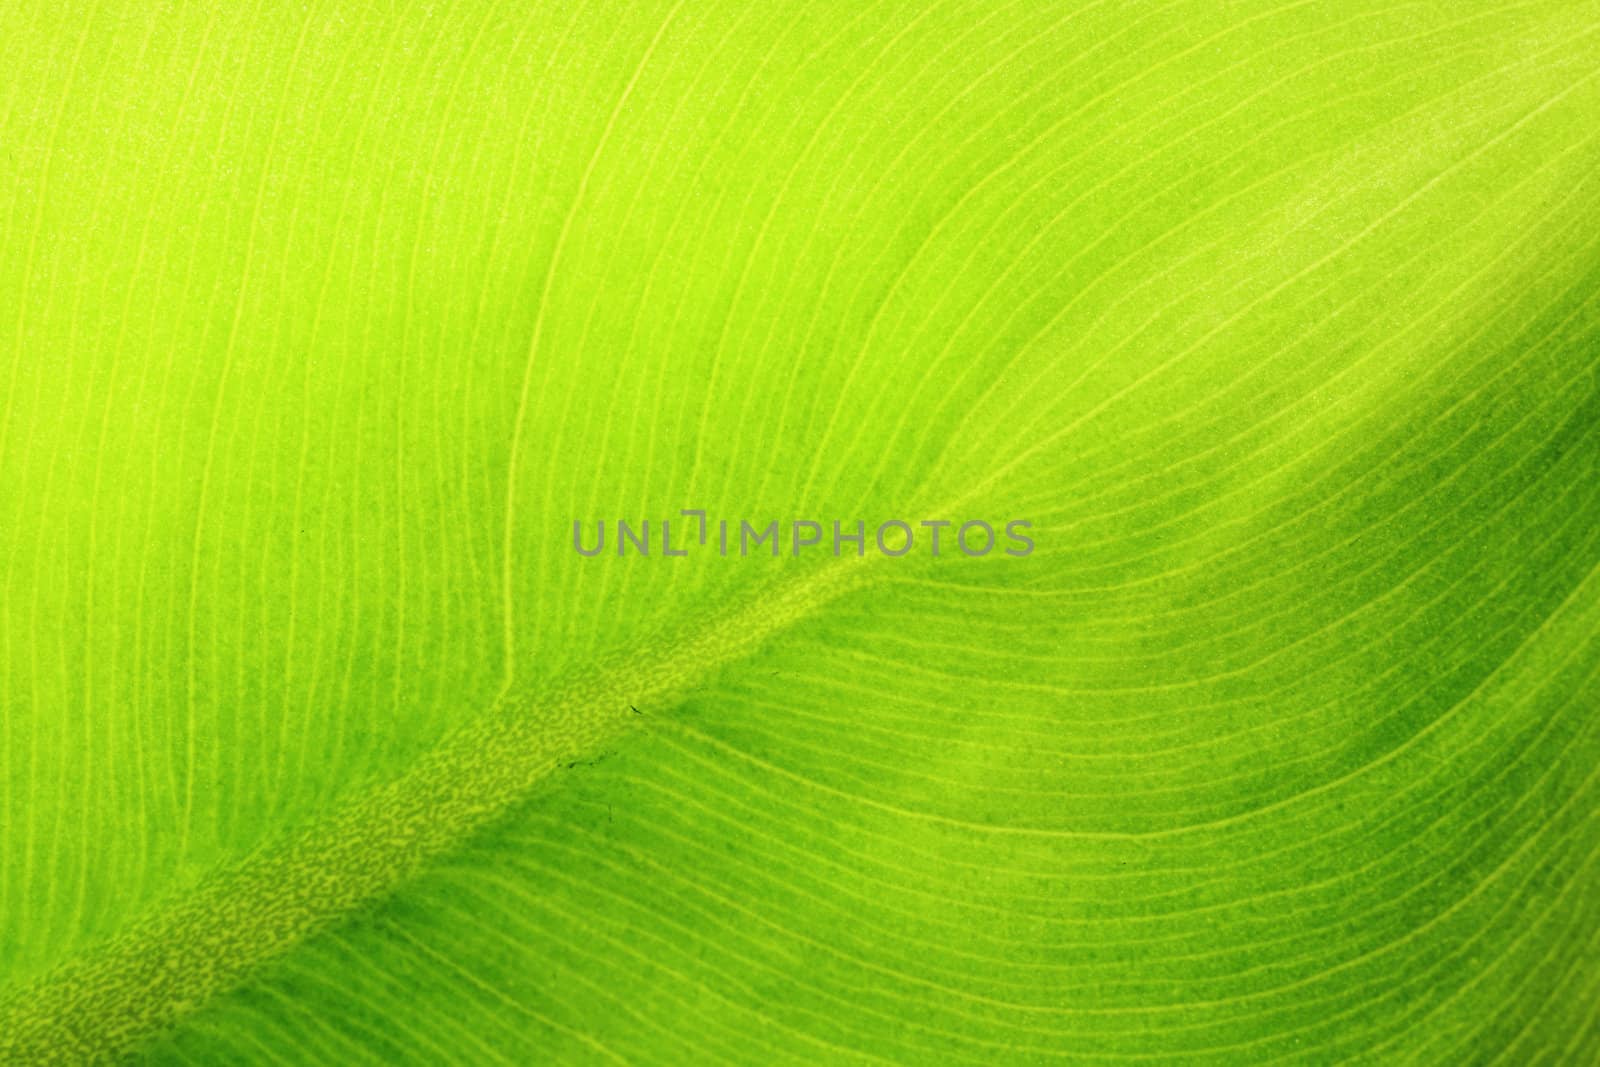 leaf details